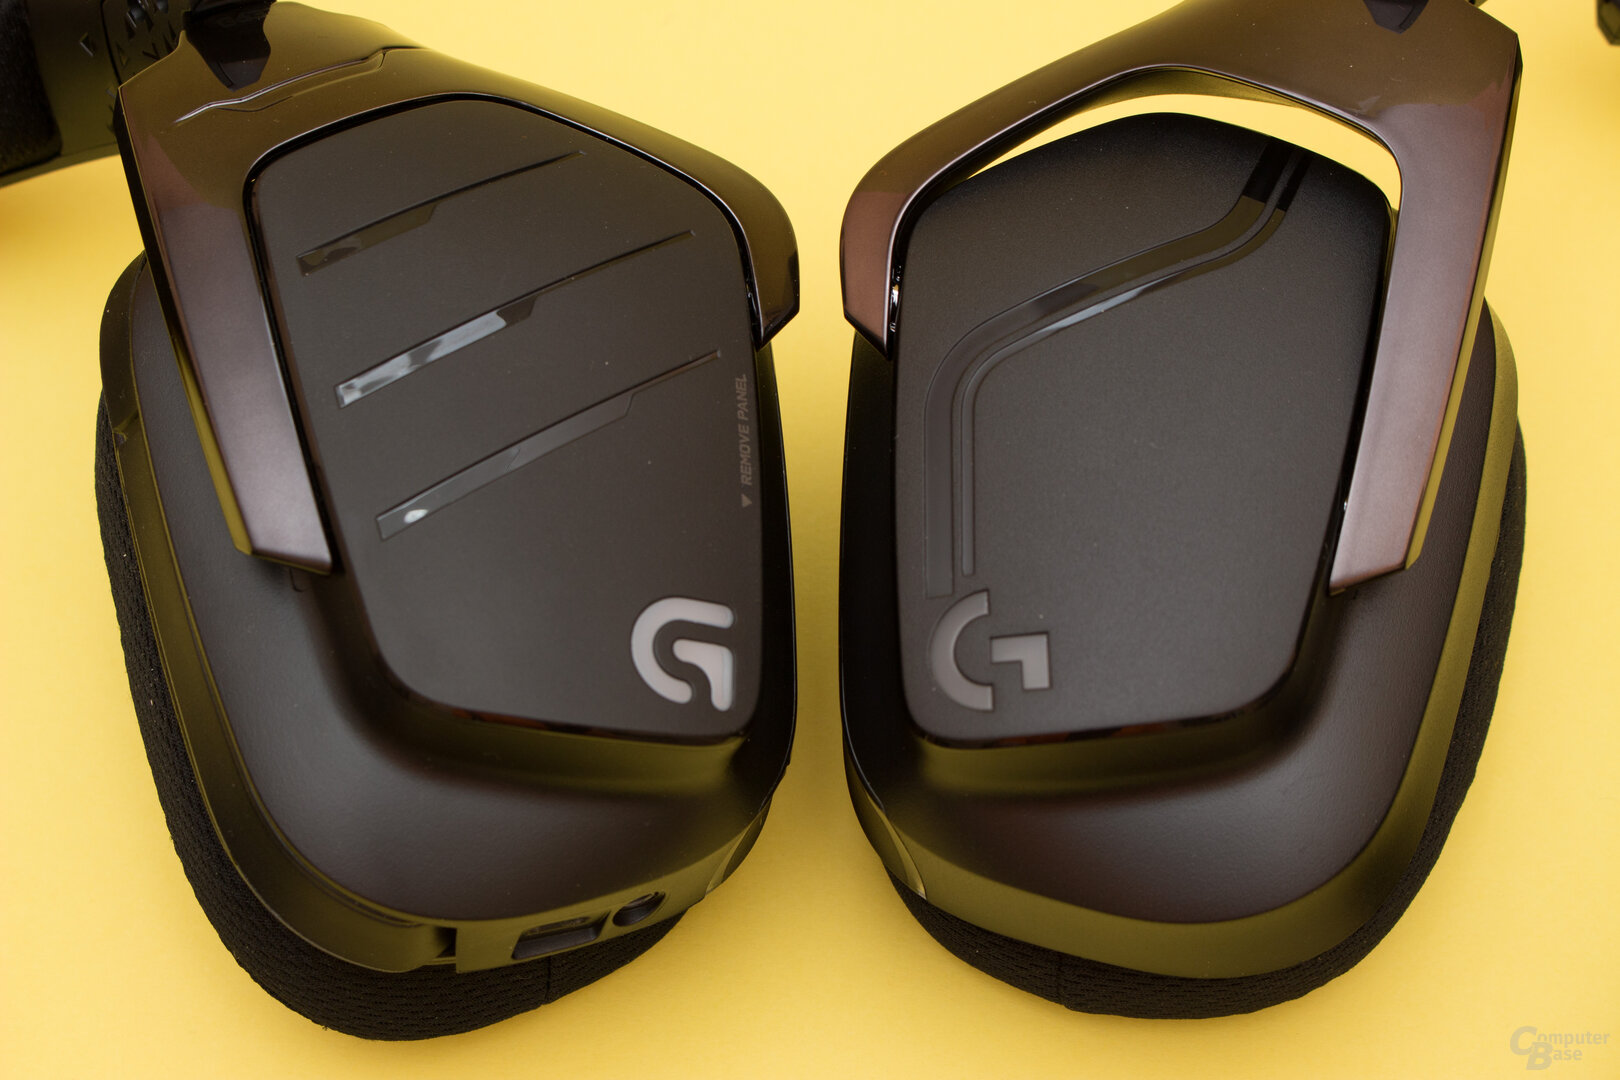 Logitech G633 (links) und G635 (rechts) im Vergleich